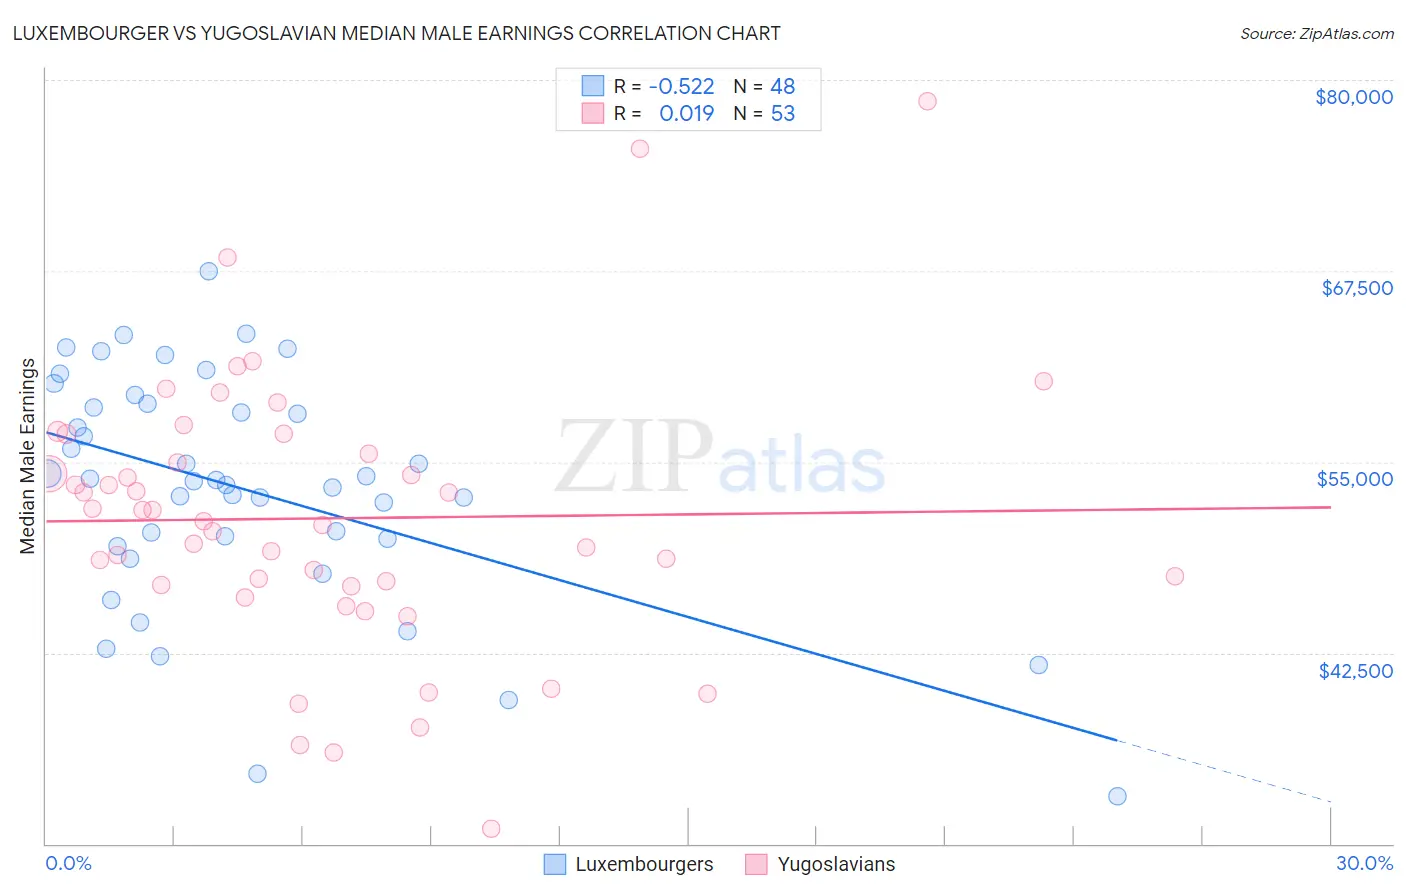 Luxembourger vs Yugoslavian Median Male Earnings